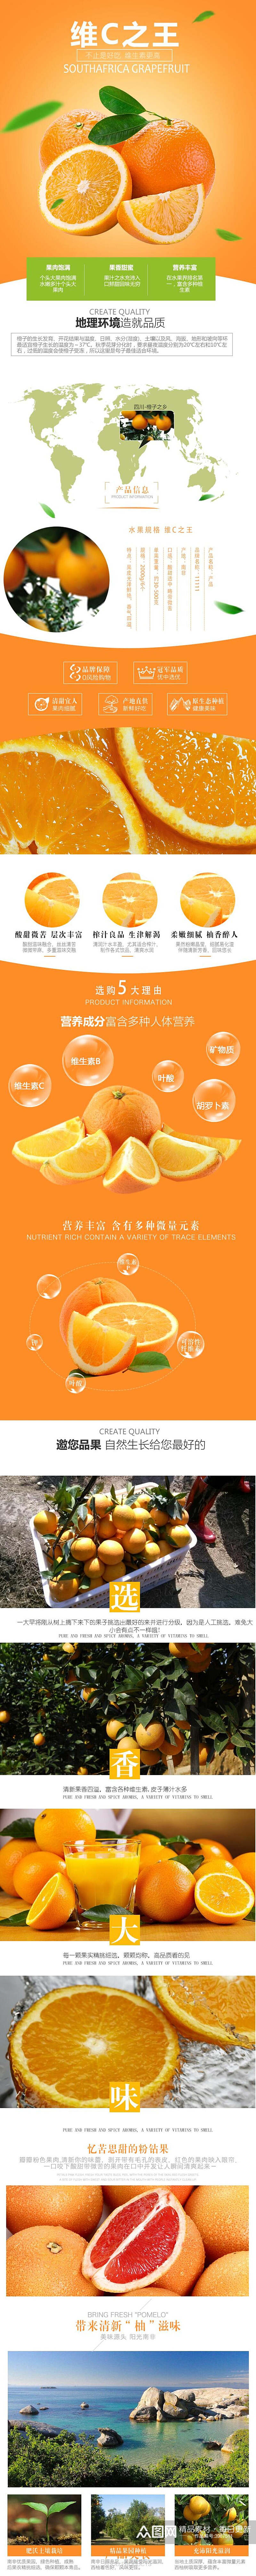 维C之王脐橙水果手机版详情页素材